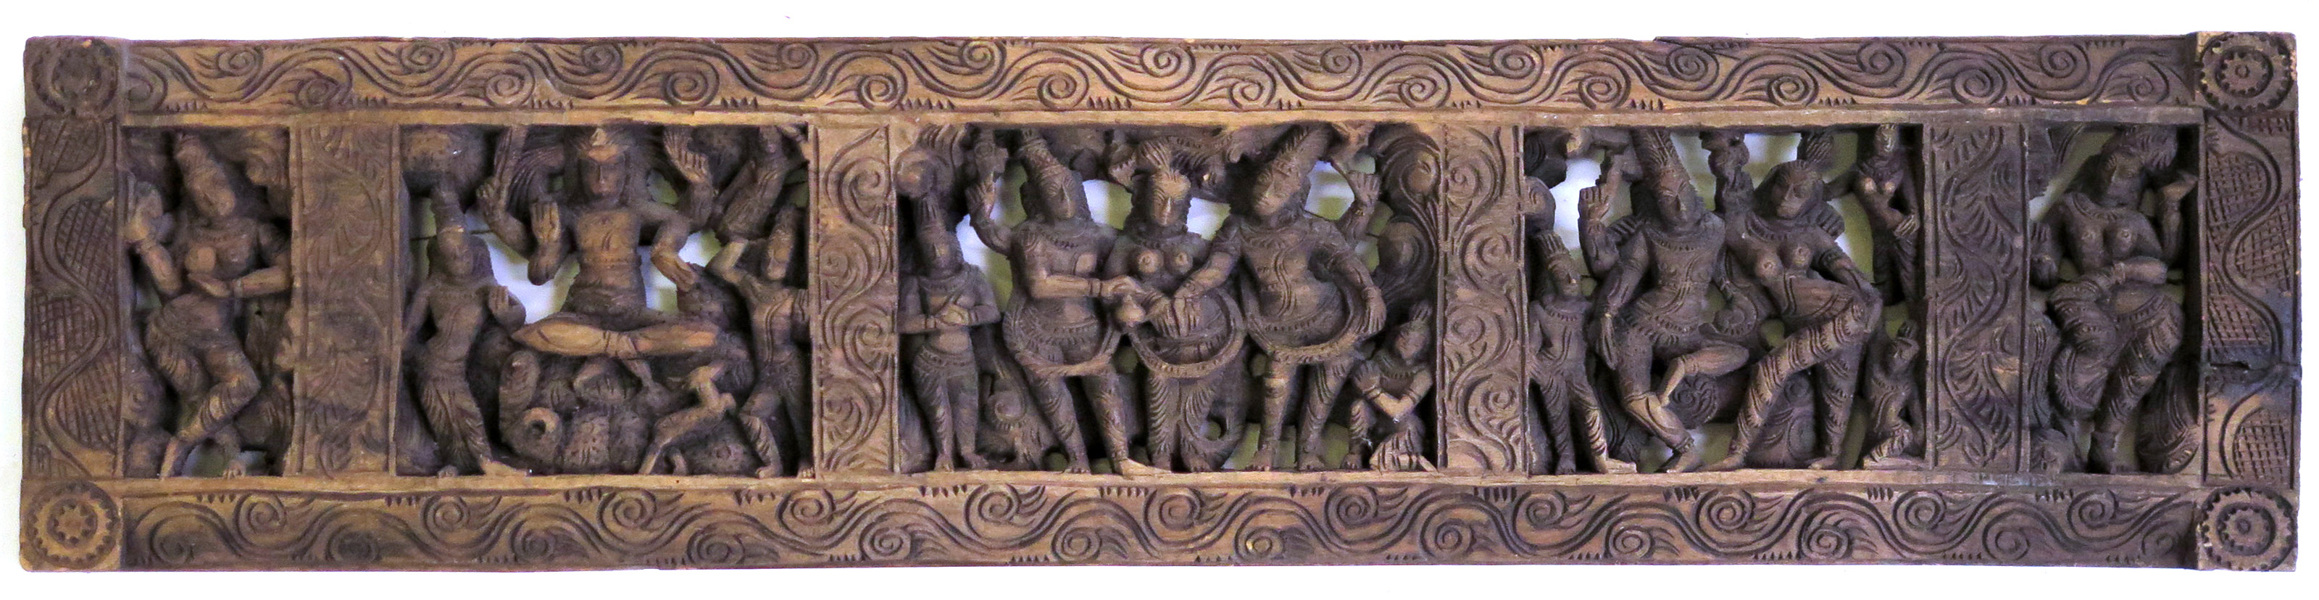 Relief, skuret trä, Indien, 1900-tal, _11464a_8d94c24a6ae10af_lg.jpeg